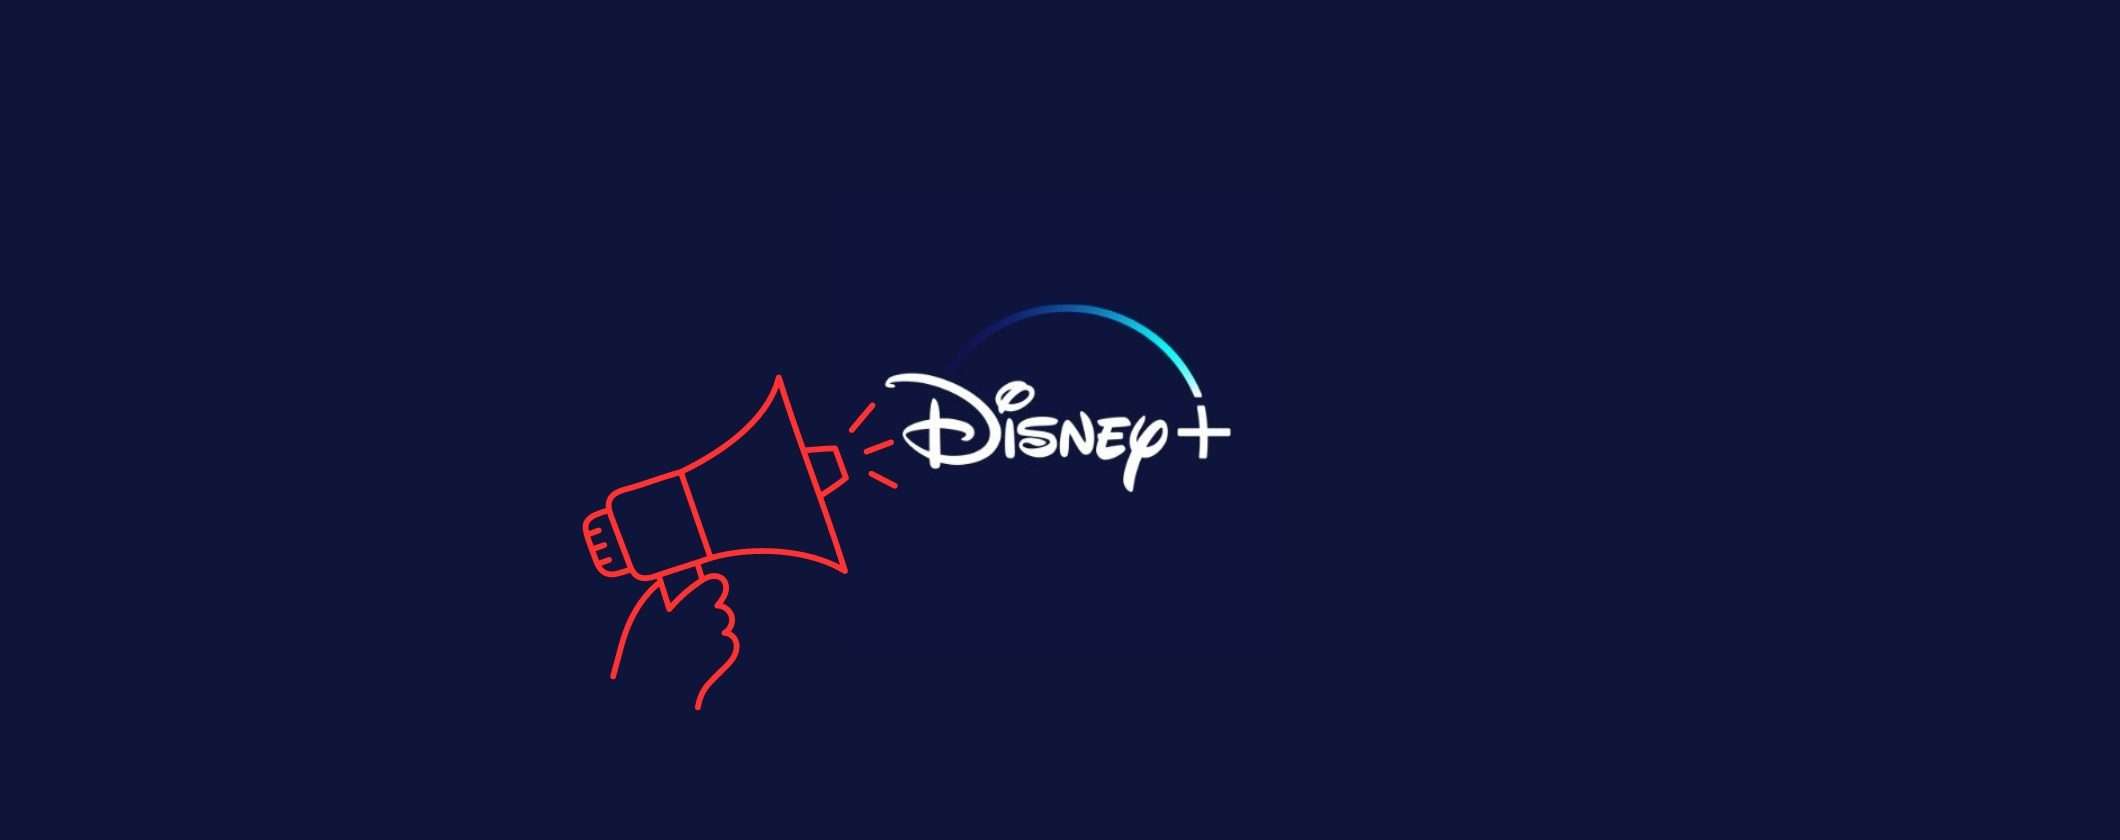 Disney+: in arrivo l'abbonamento con pubblicità, prezzo e data